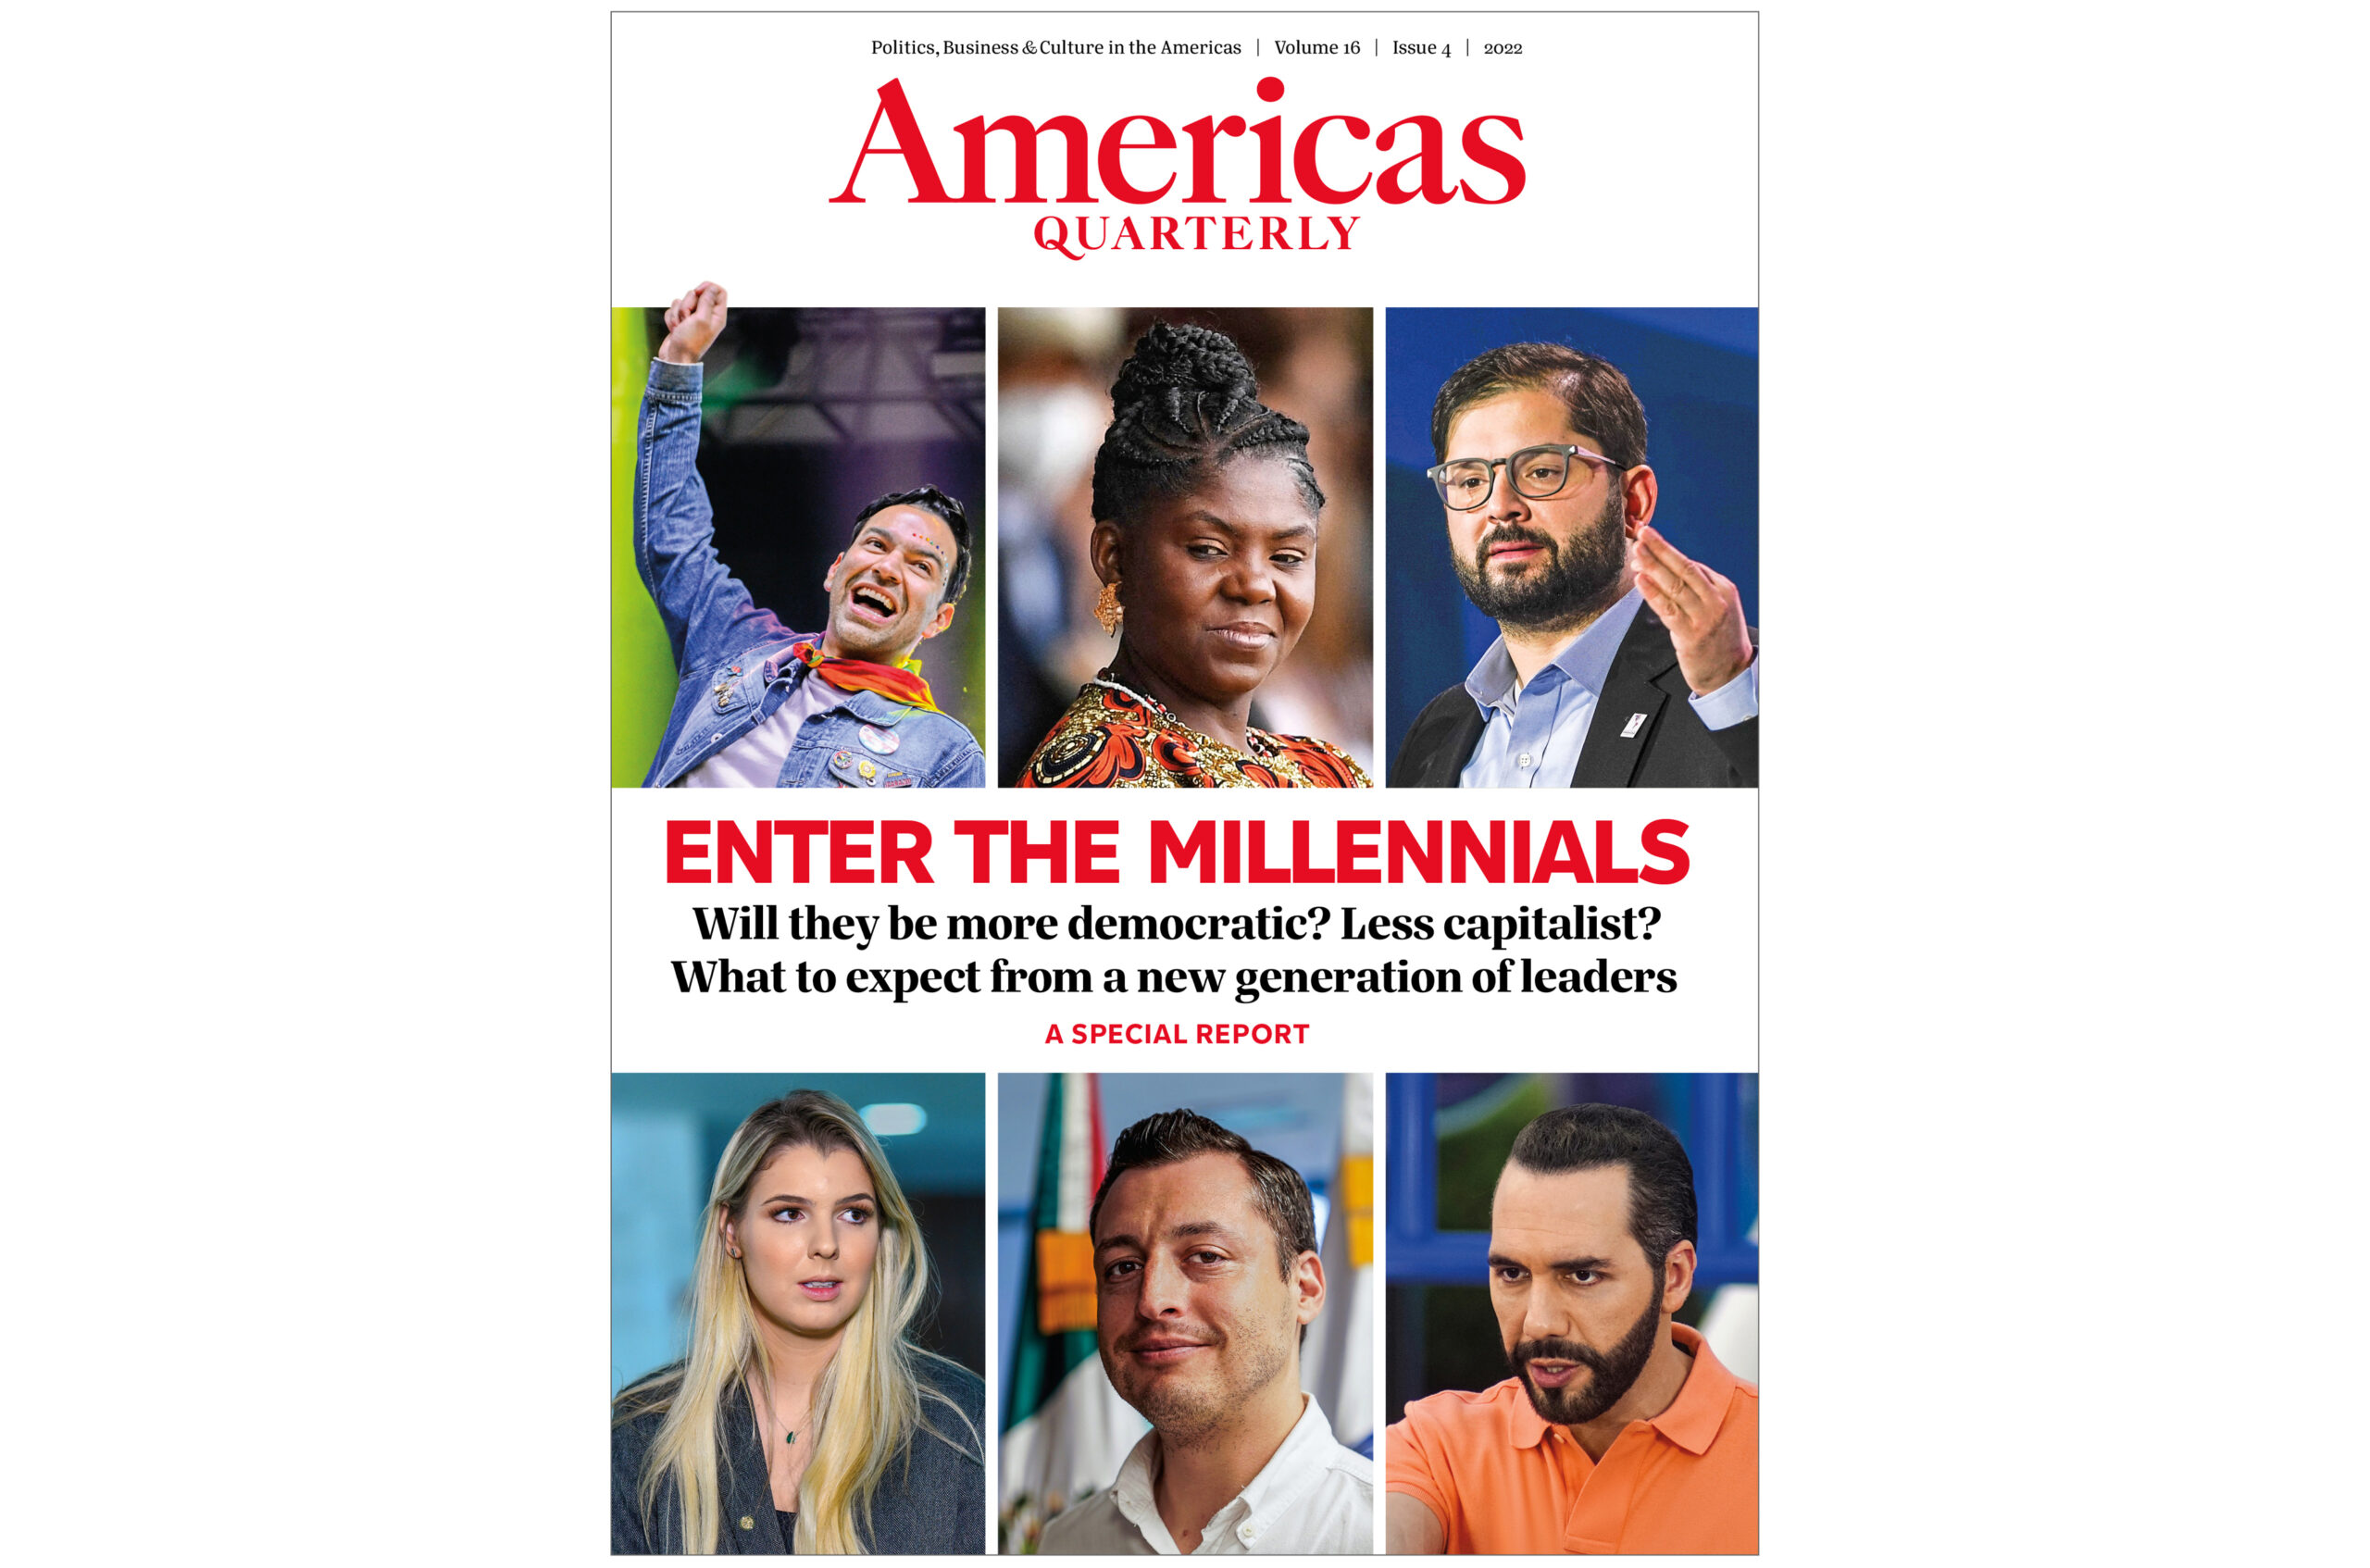 ¿Los millennials latinoamericanos son más autoritarios o más democráticos?